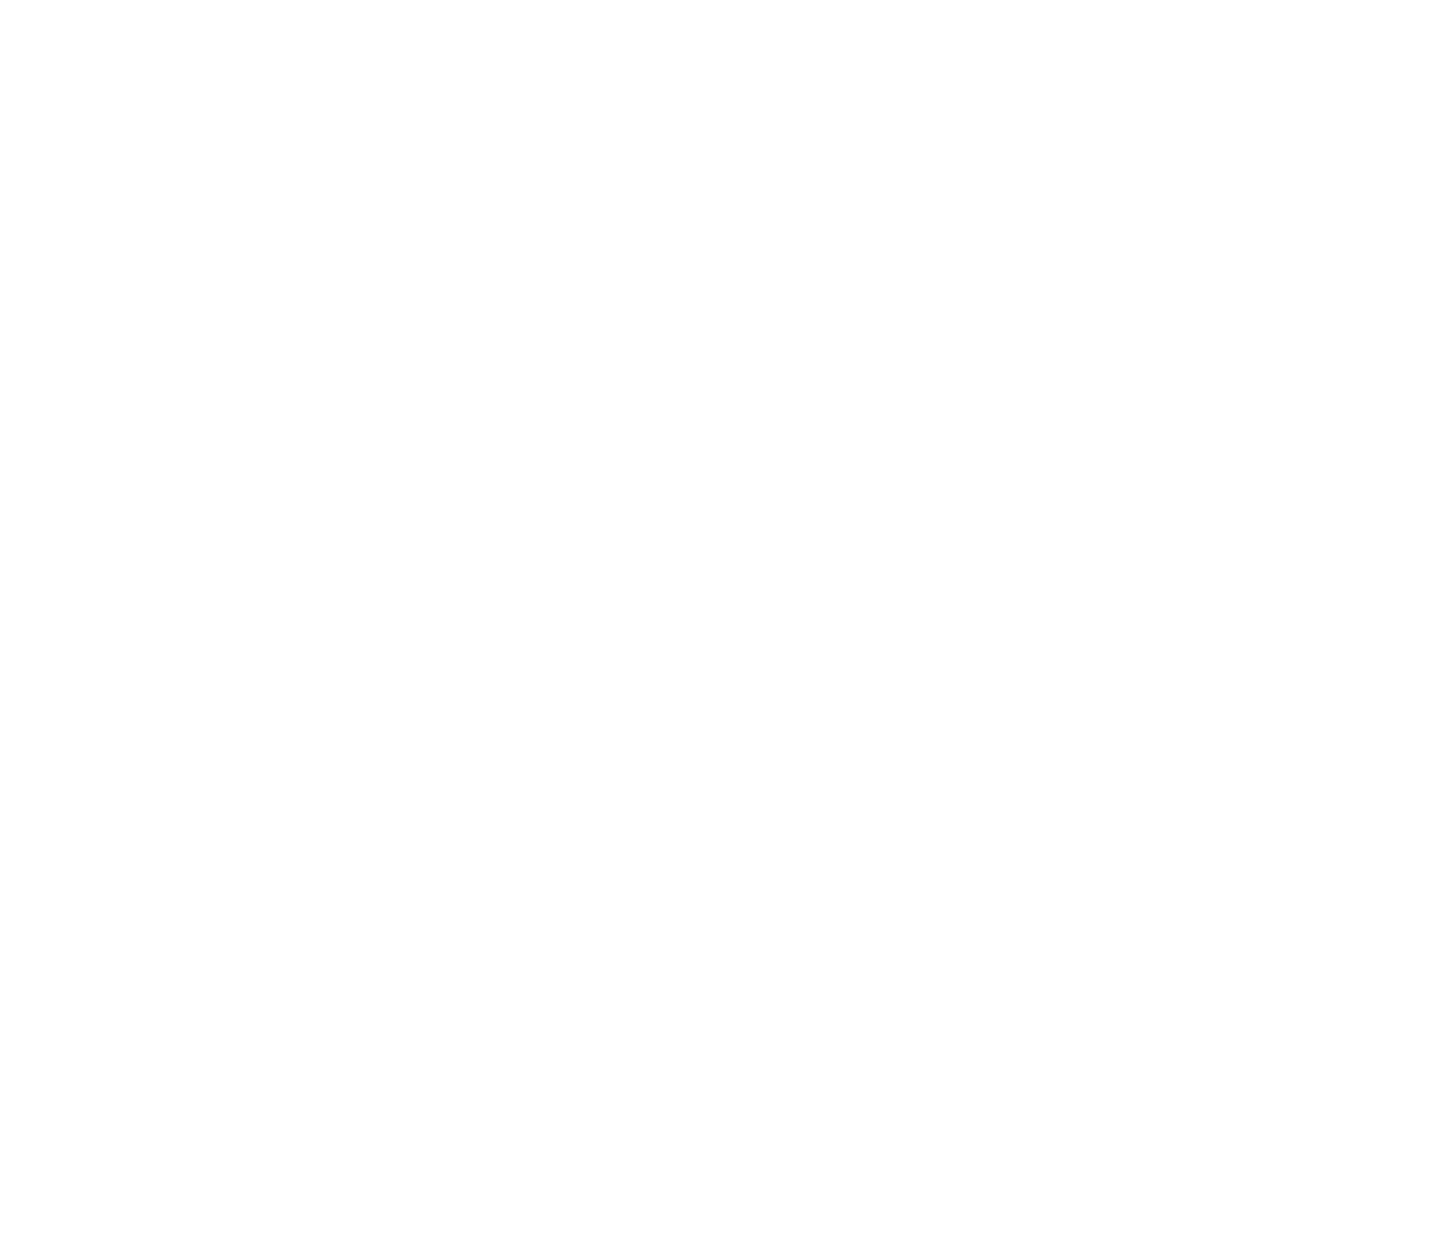 Multisensore ACD - Rilevazione CO